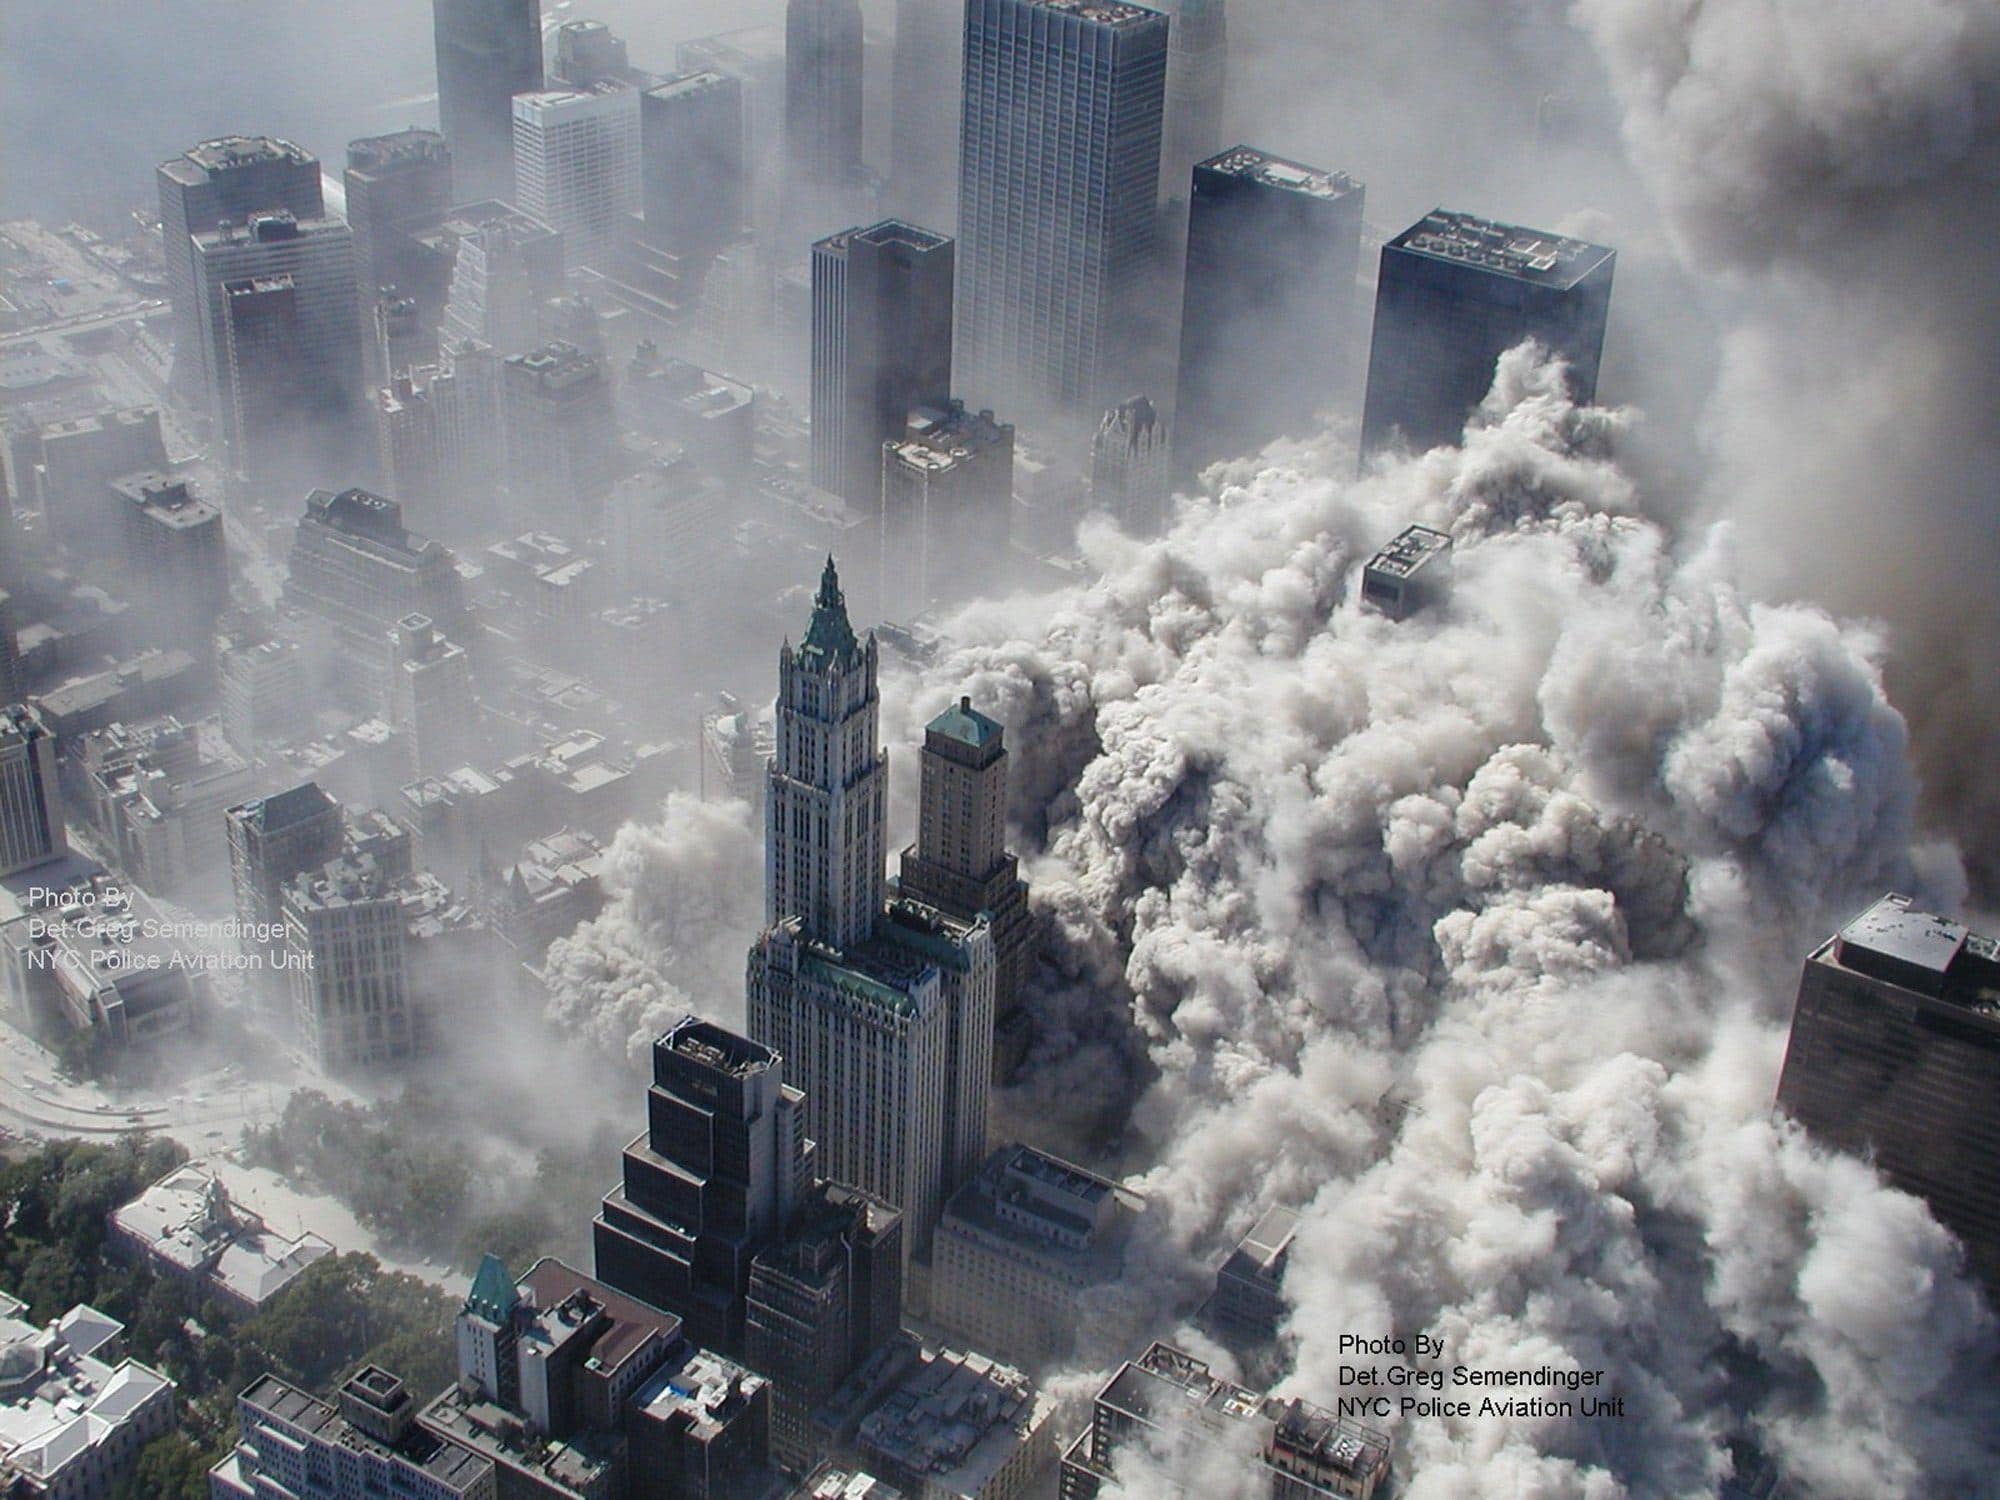 Fotografía de archivo tomada el 11 de septiembre de 2001 por el Departamento de Policía de la ciudad de Nueva York, y facilitada por ABC News, que muestra una vista aérea del atentado contra las Torres Gemelas en el World Trade Center, en Nueva York (Estados Unidos).